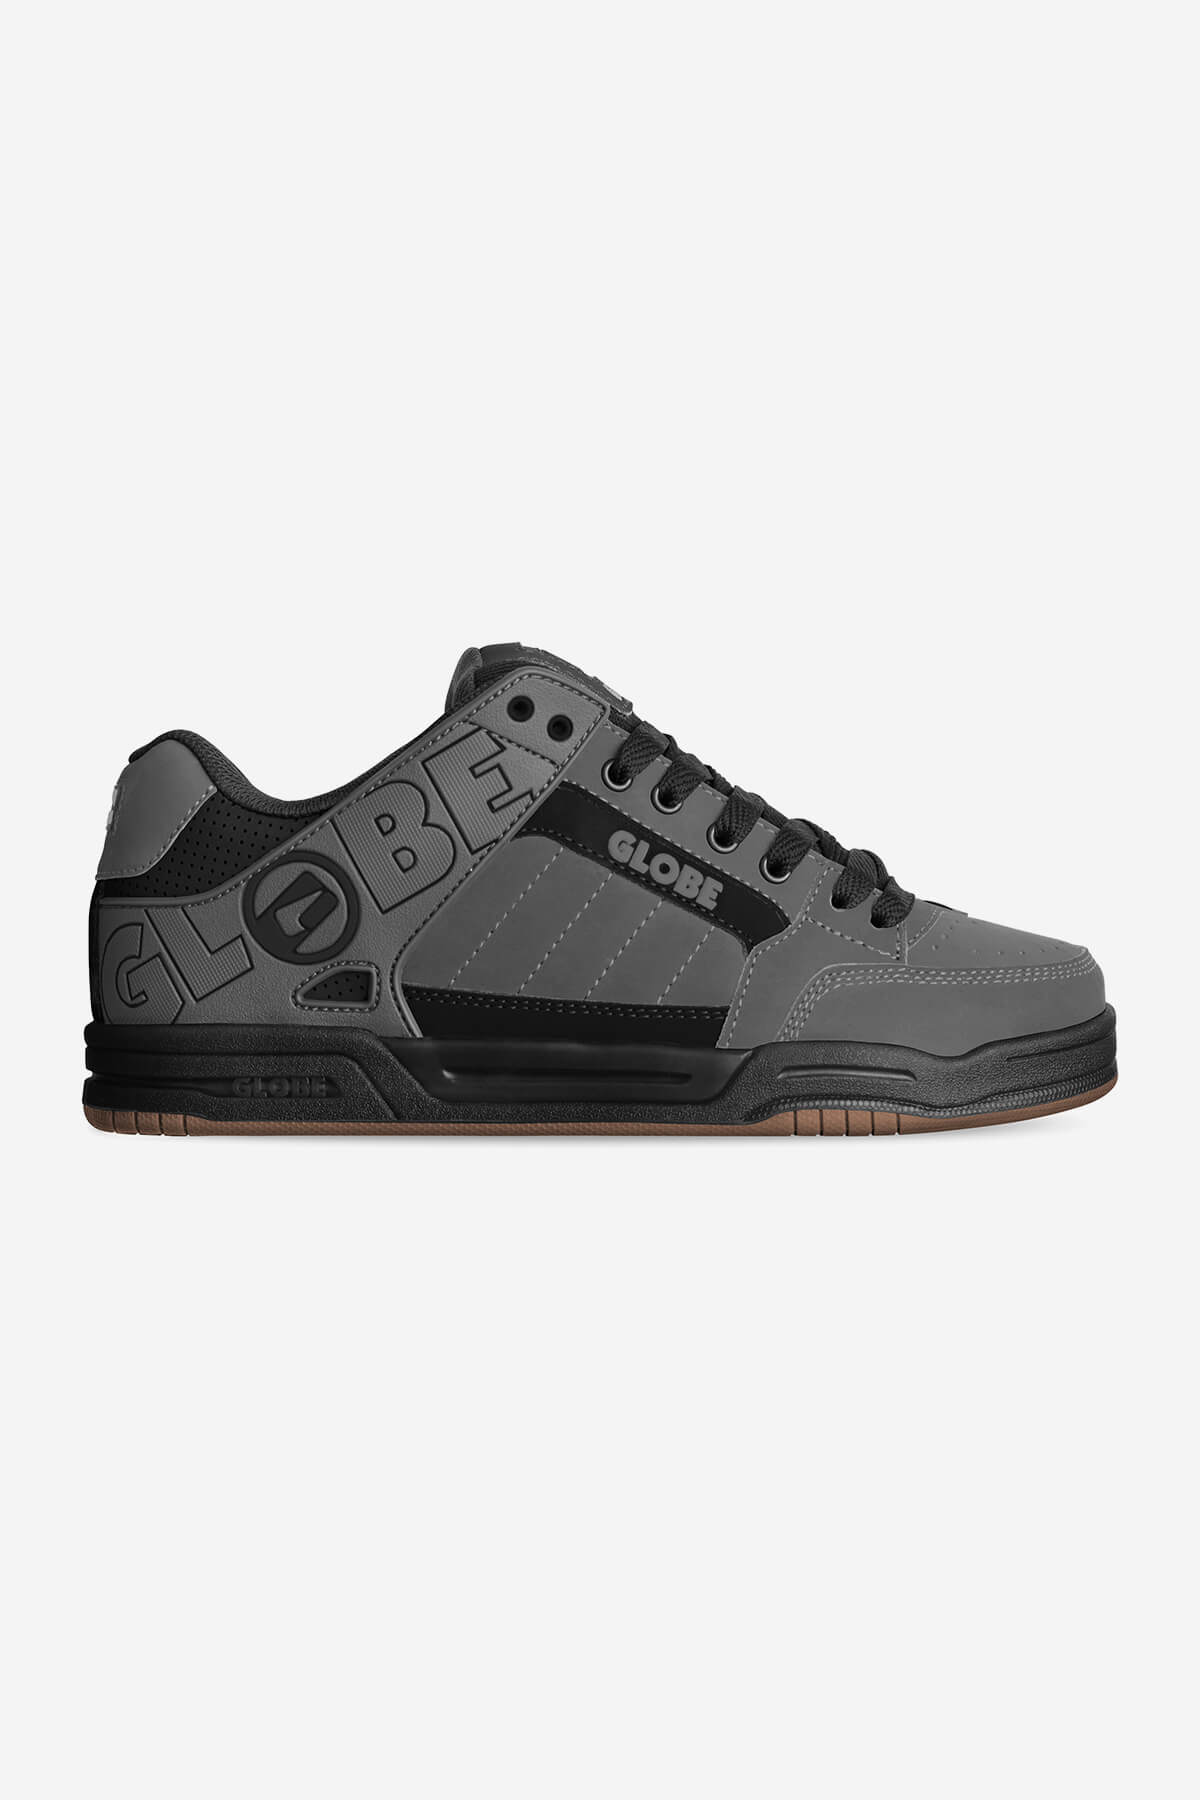 tilt storm grey black skate shoes